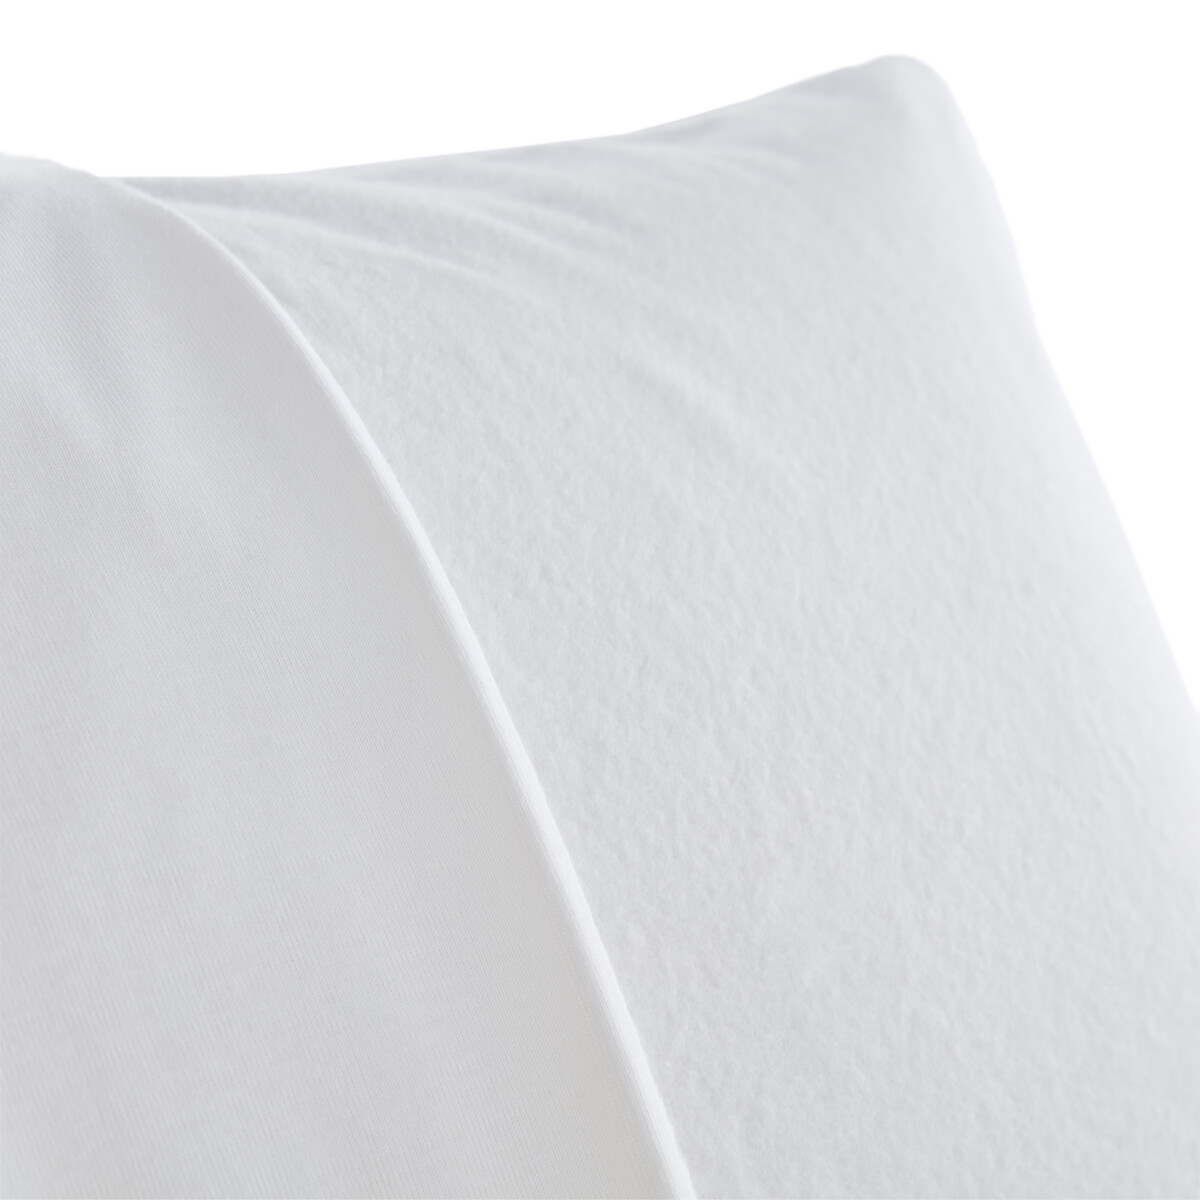 Чехол La Redoute Защитный на подушку из мольтона с обработкой против клещей 50 x 70 см белый, размер 50 x 70 см - фото 2